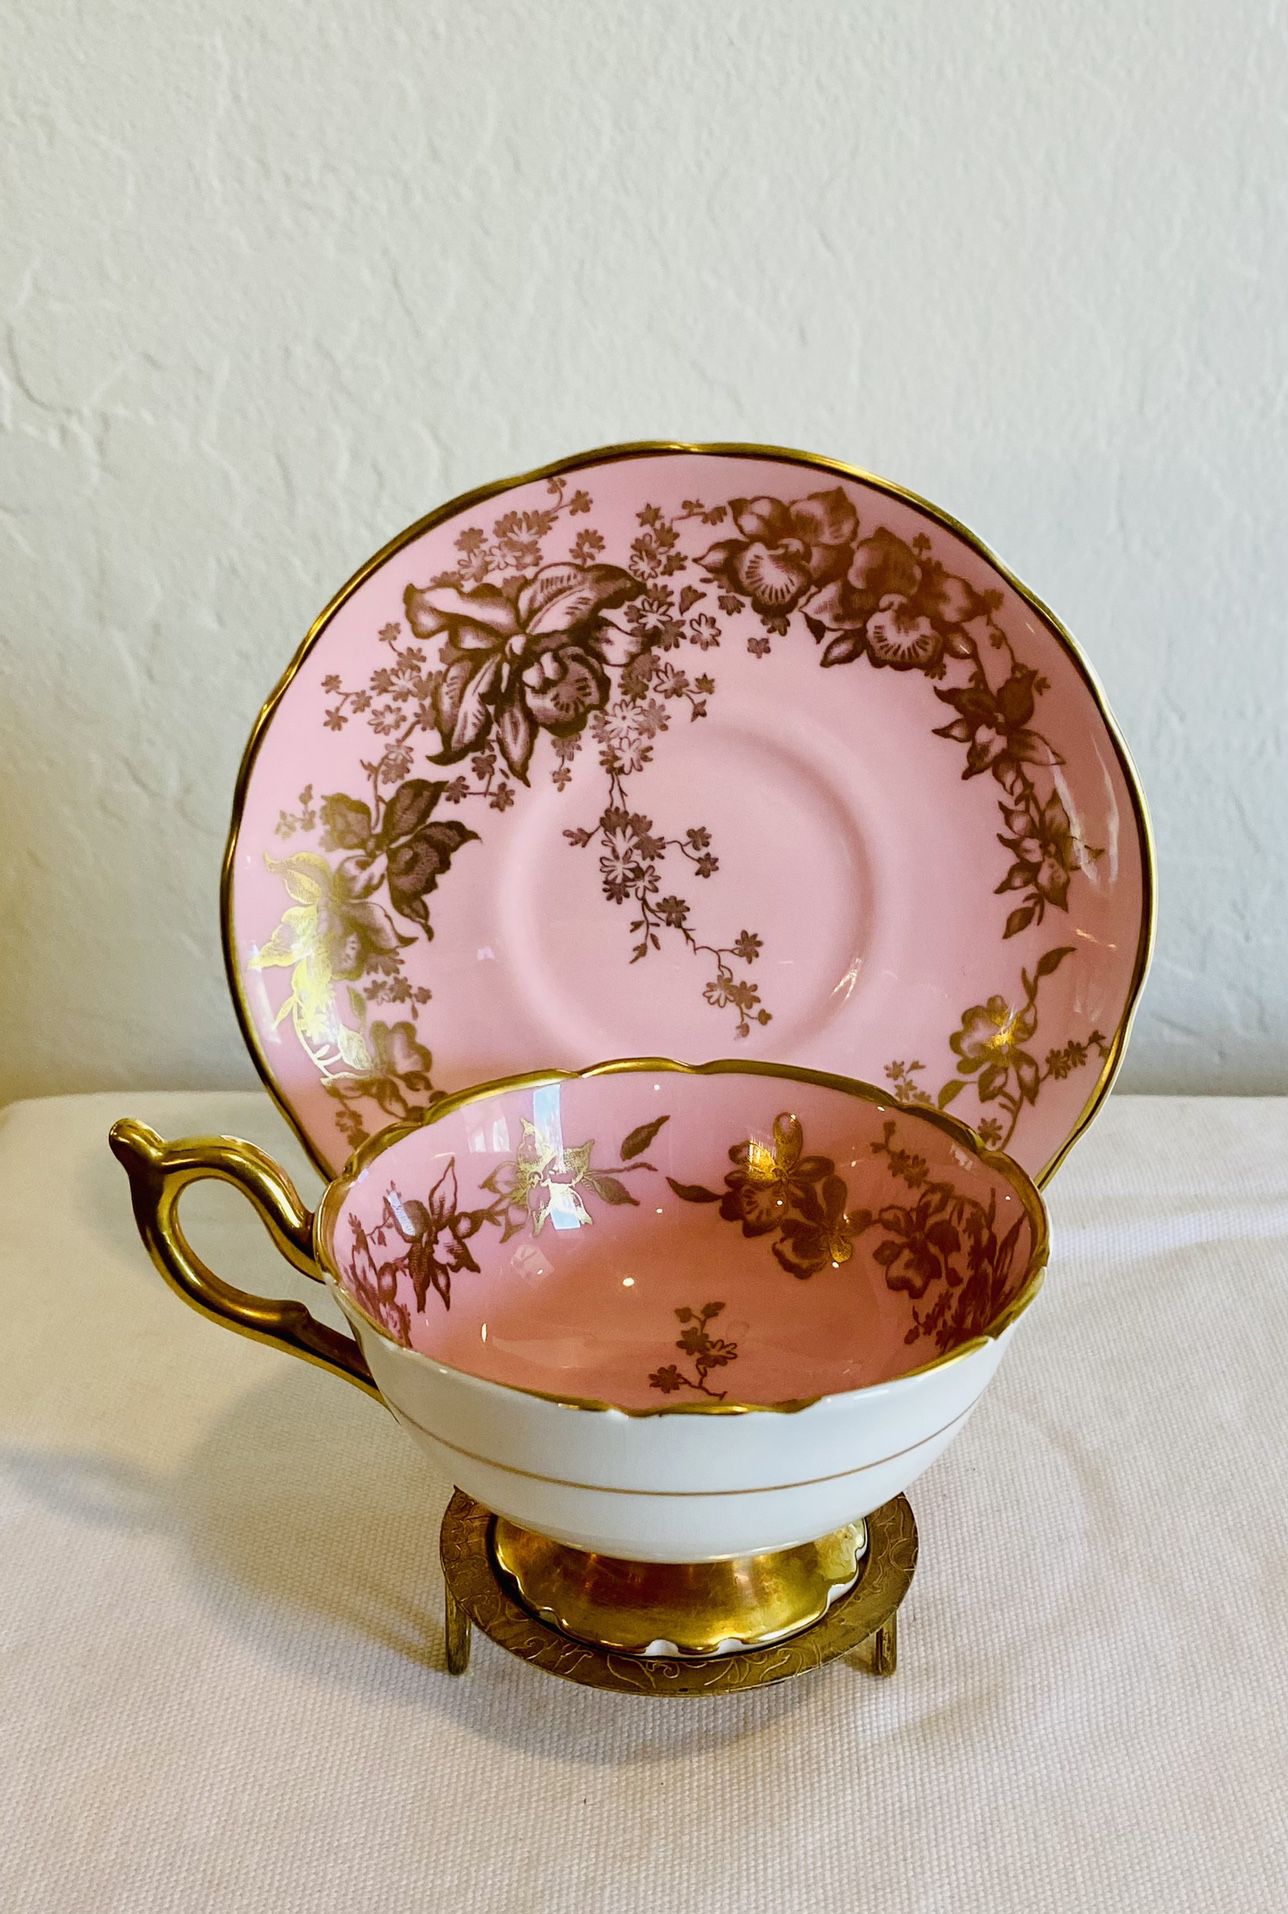 Vintage Coalport Teacup Saucer Pink Gold Banded Orchid England Excellent Bone China